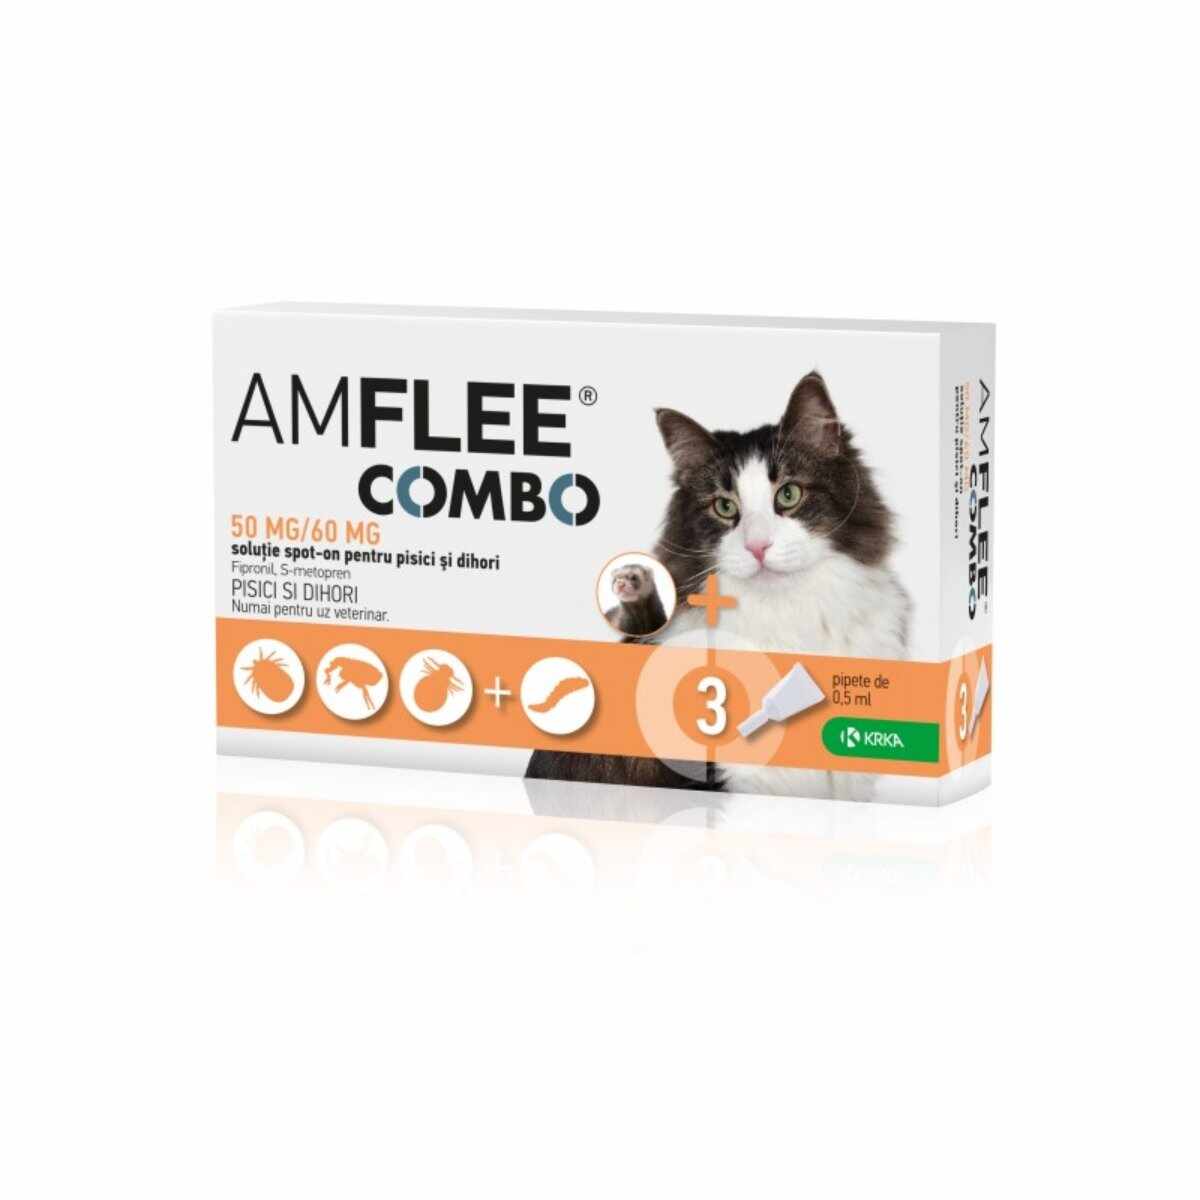 AMFLEE Combo Cat, spot-on, soluție antiparazitară, pisici si dihori, 3 pipete